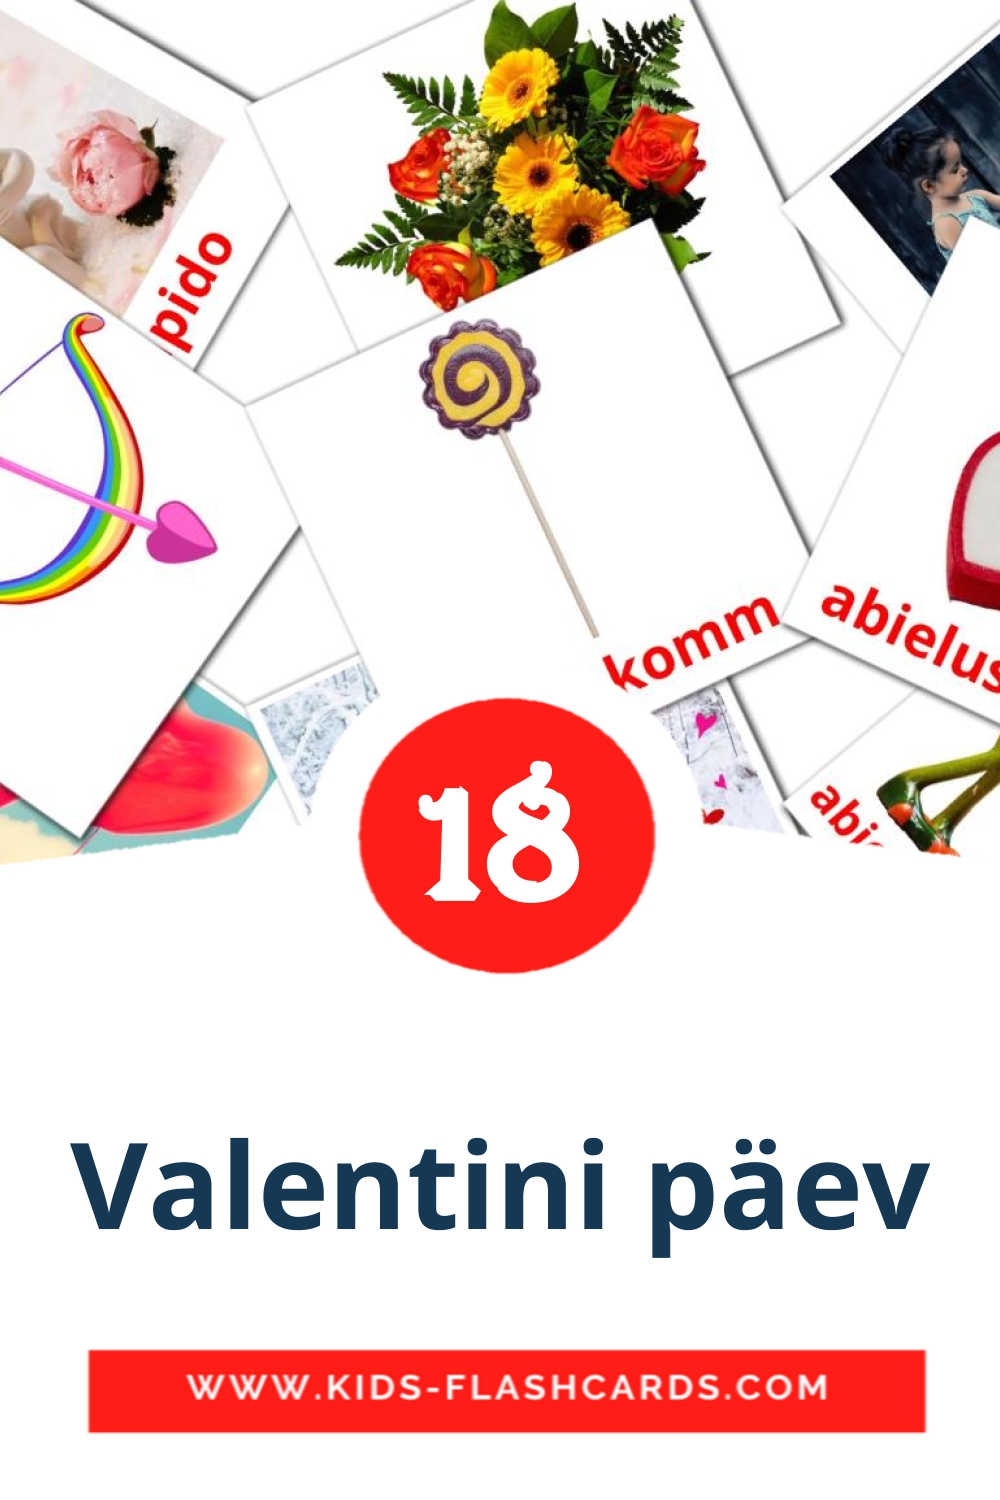 18 Cartões com Imagens de Valentini päev para Jardim de Infância em estoniano